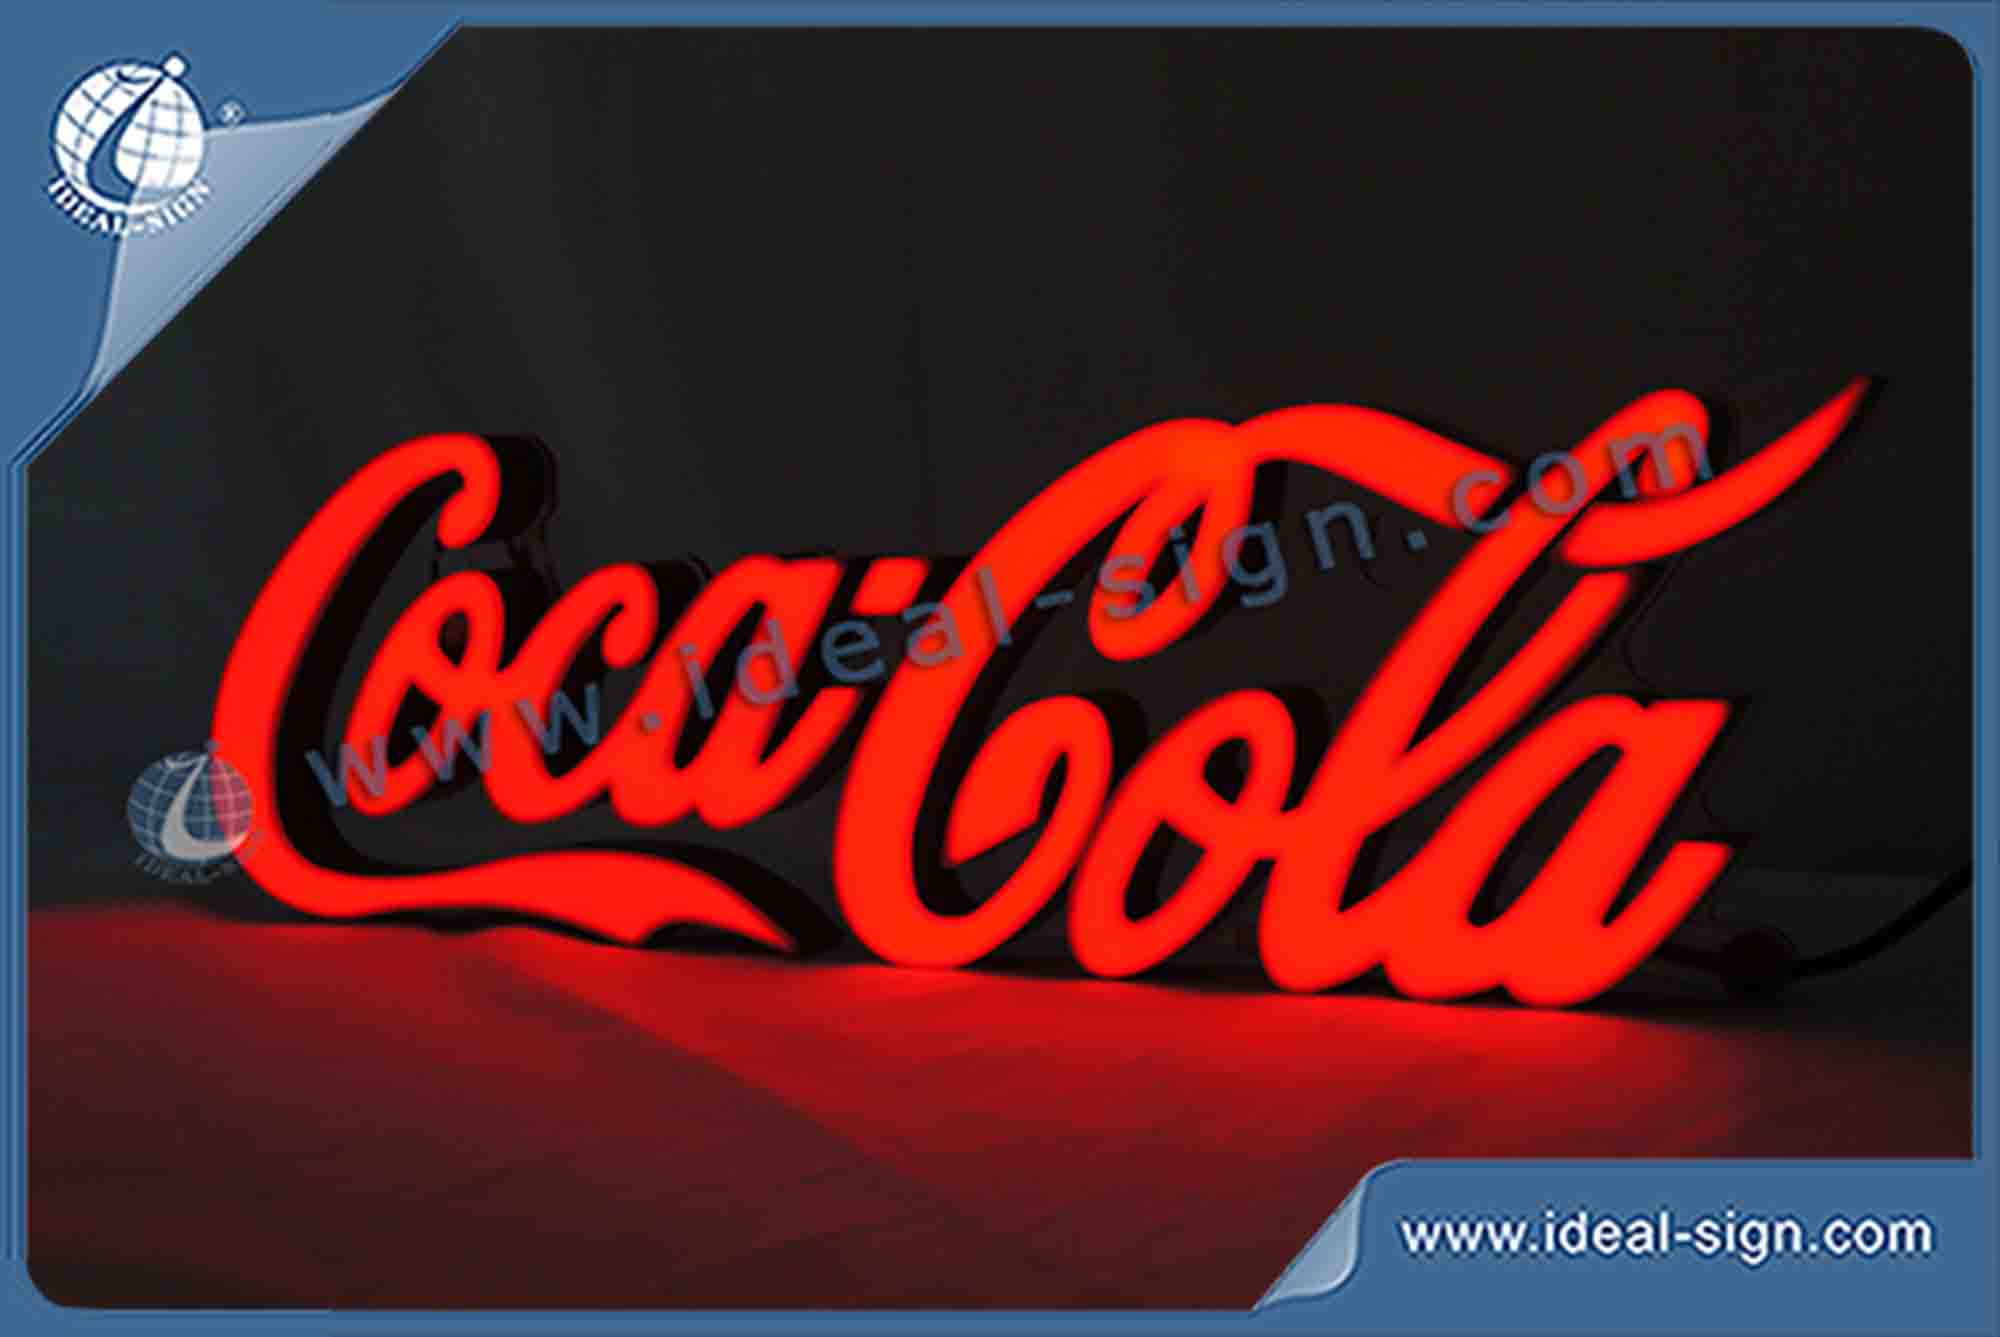 CocaCola Palabras interior Carta LED Resina sesión